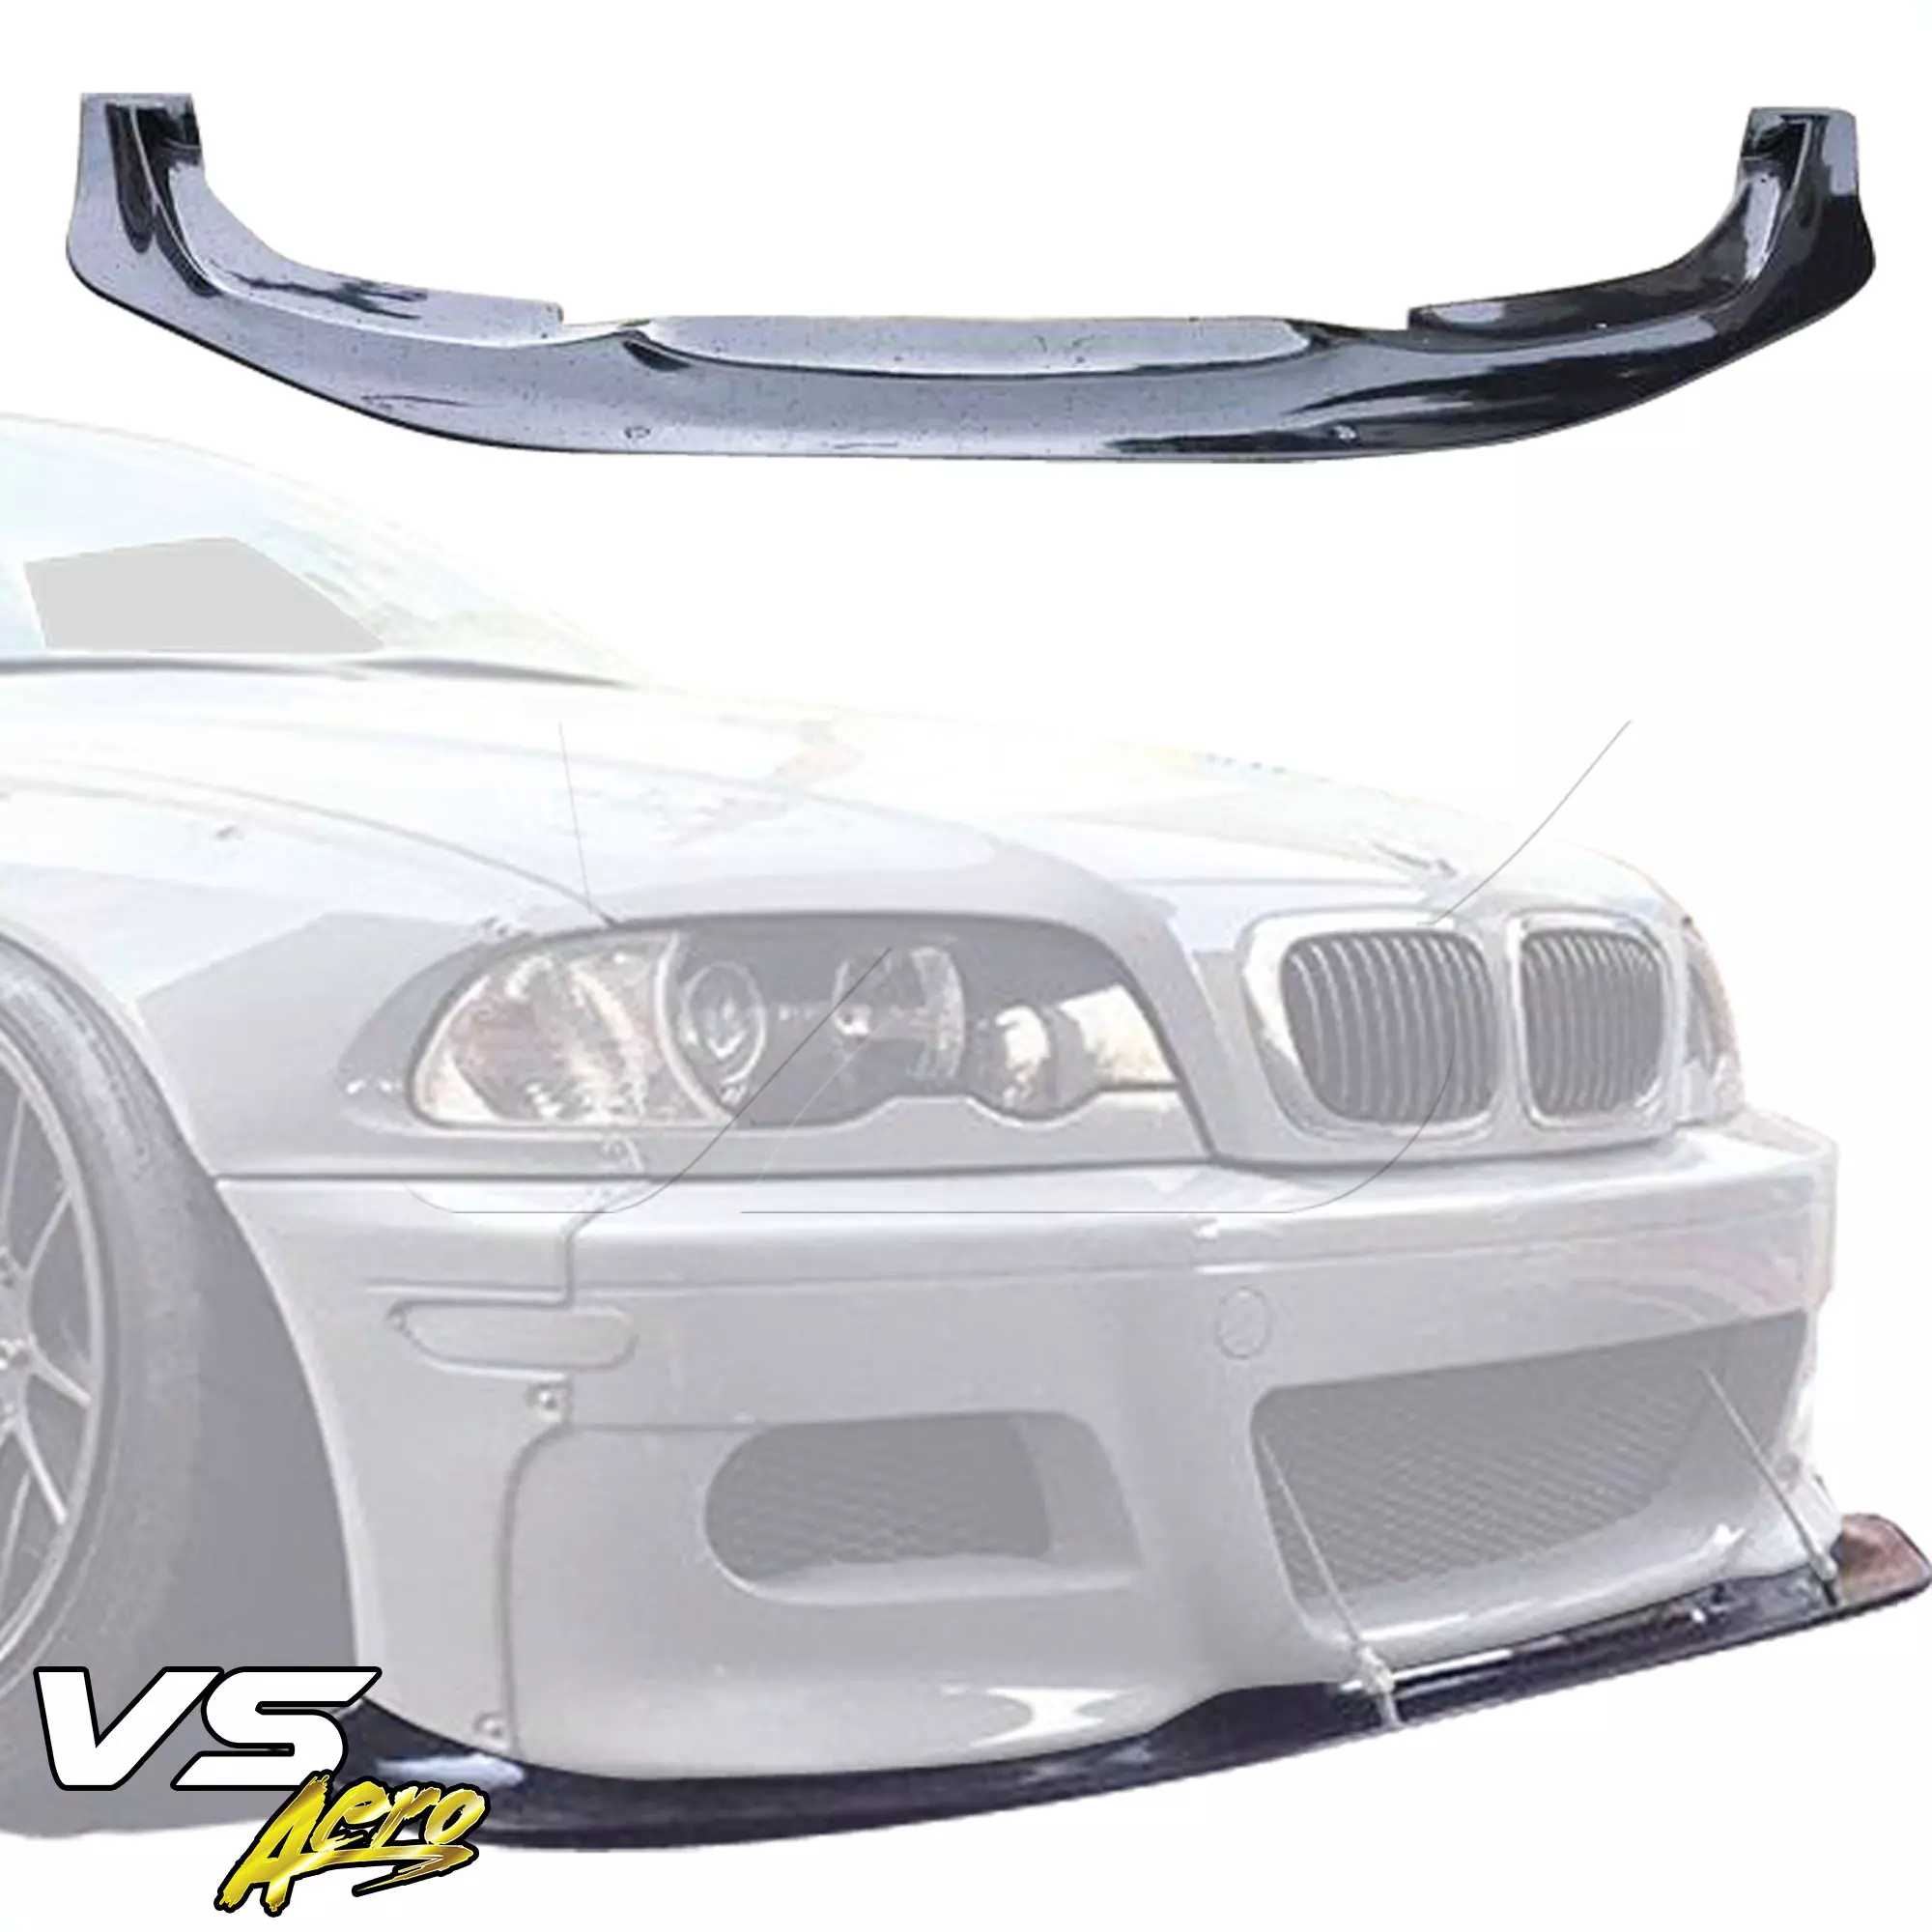 VSaero FRP TKYO Wide Body Front Lip > BMW 3-Series 325Ci 330Ci E46 1999-2001 > 2dr Coupe - Image 8